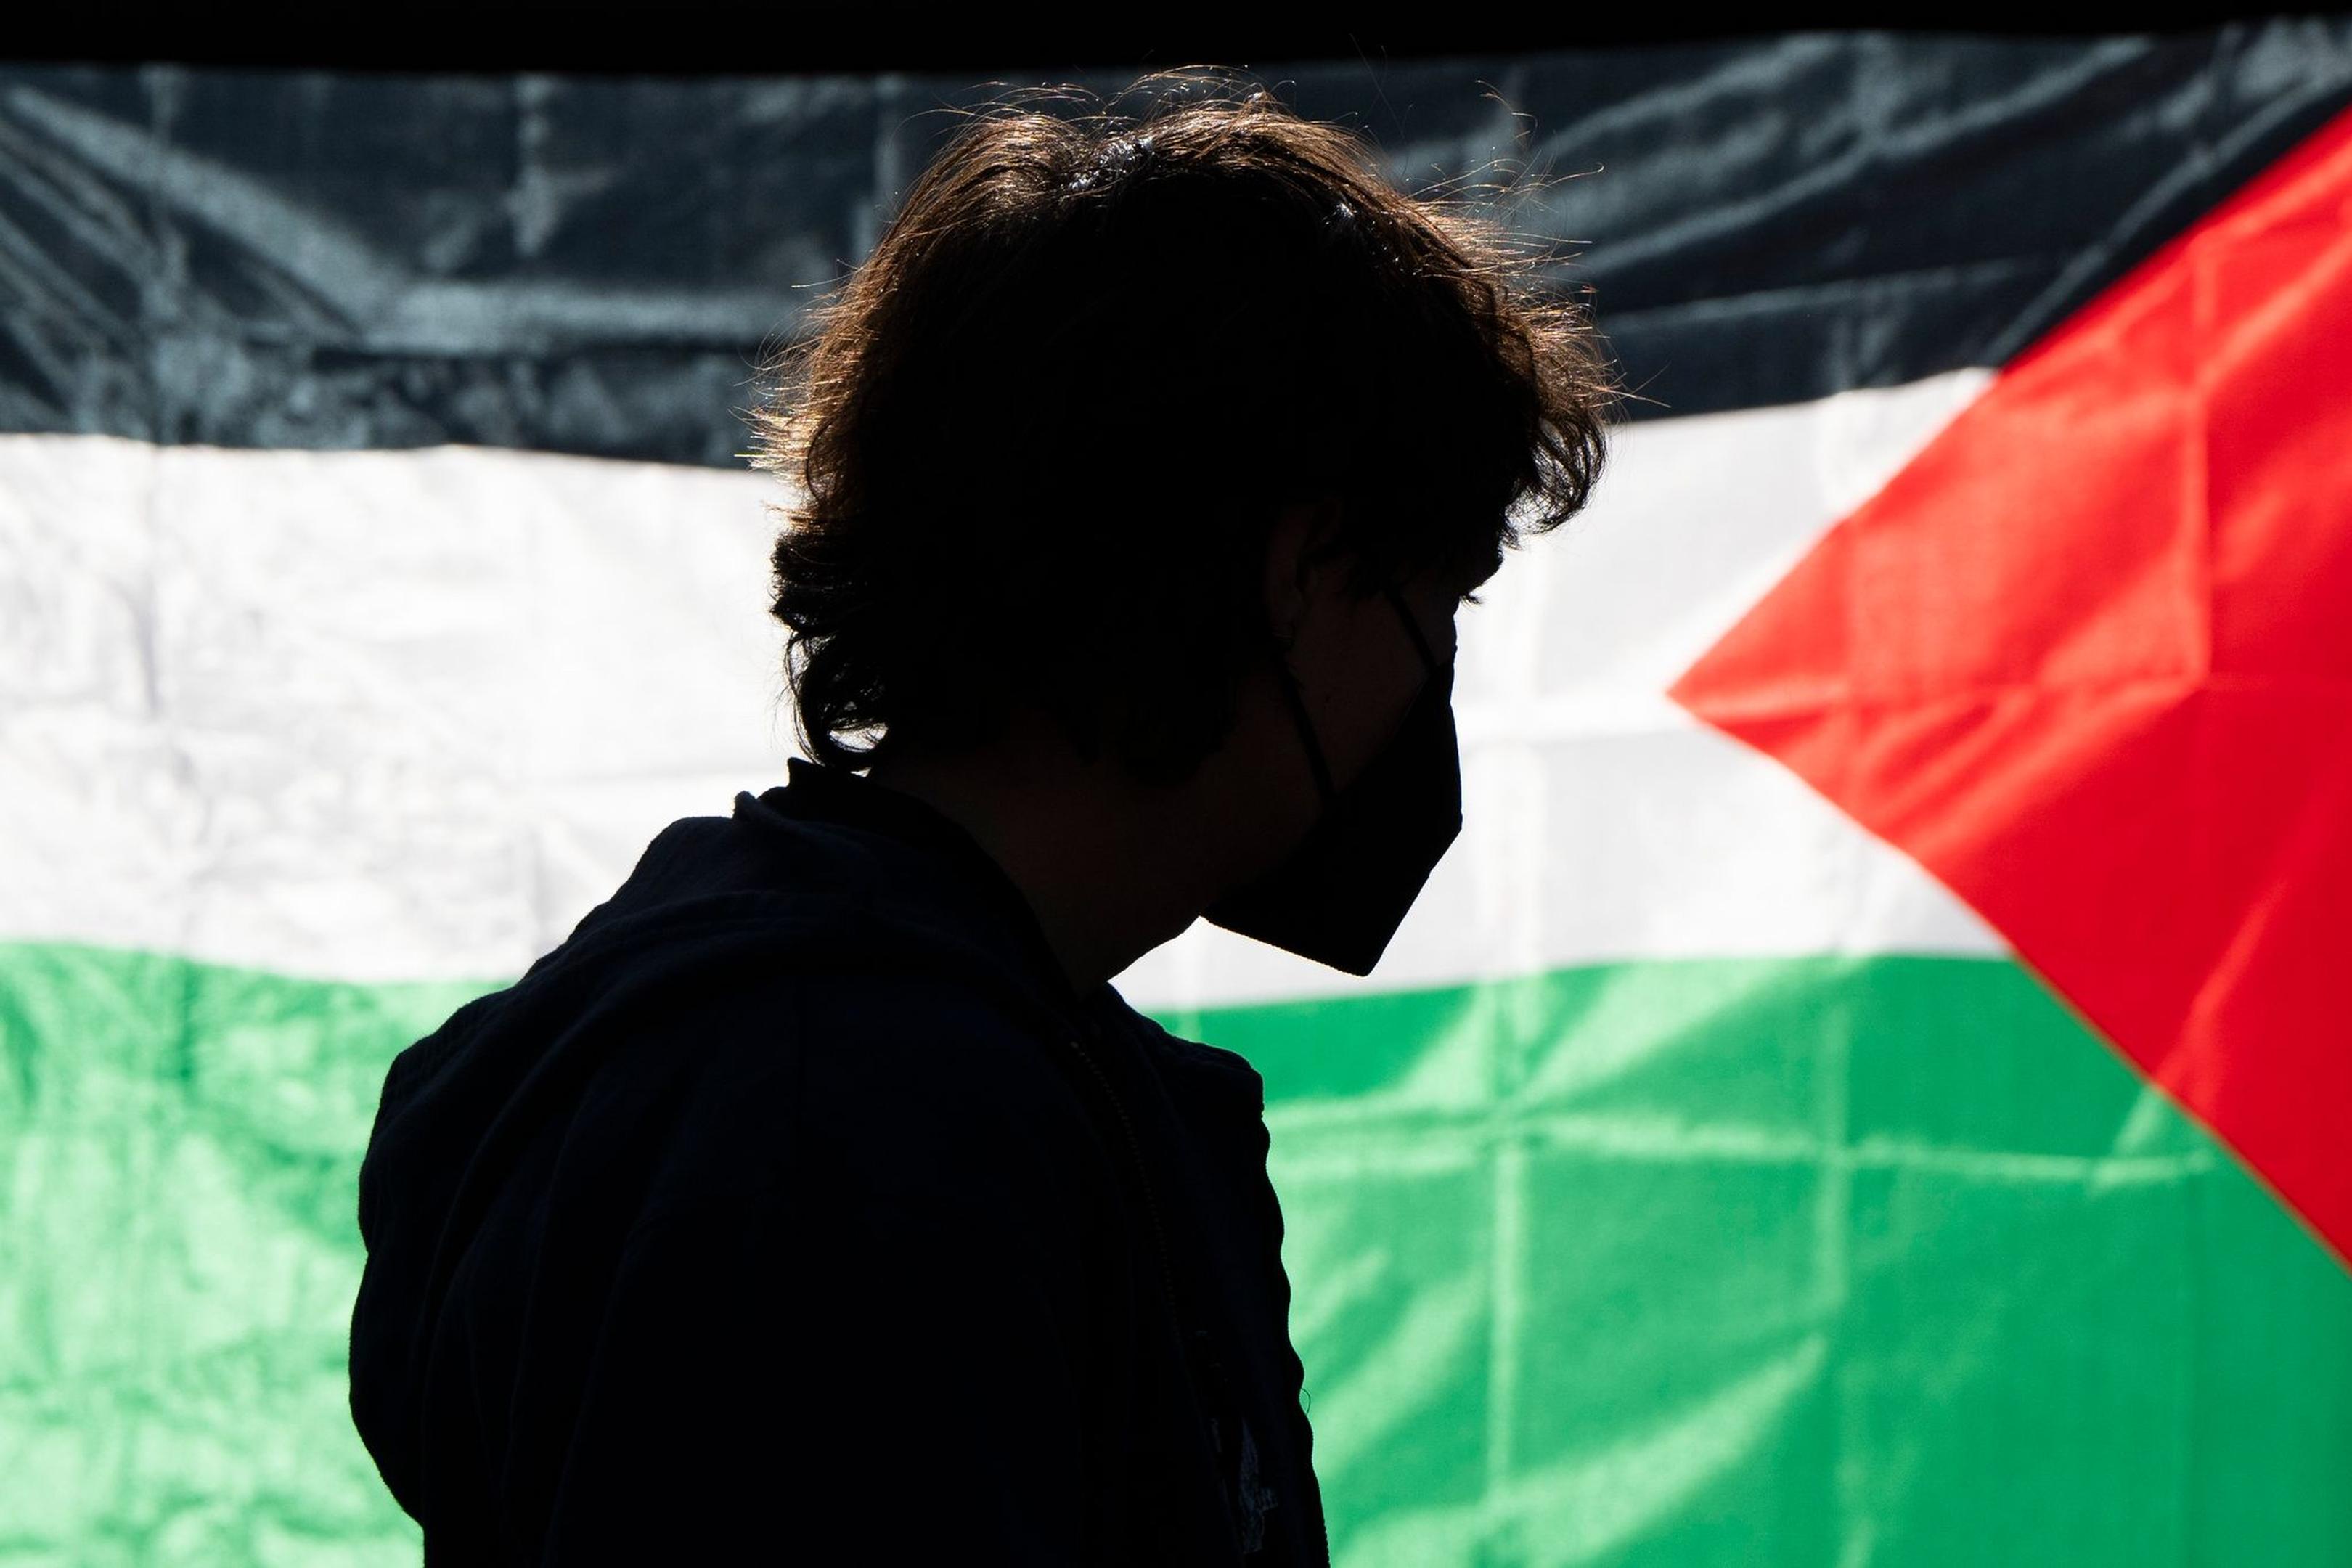 Die Demonstrierenden kritisieren das Vorgehen Israels im Gaza-Krieg und fordern Solidarität mit den Palästinensern.